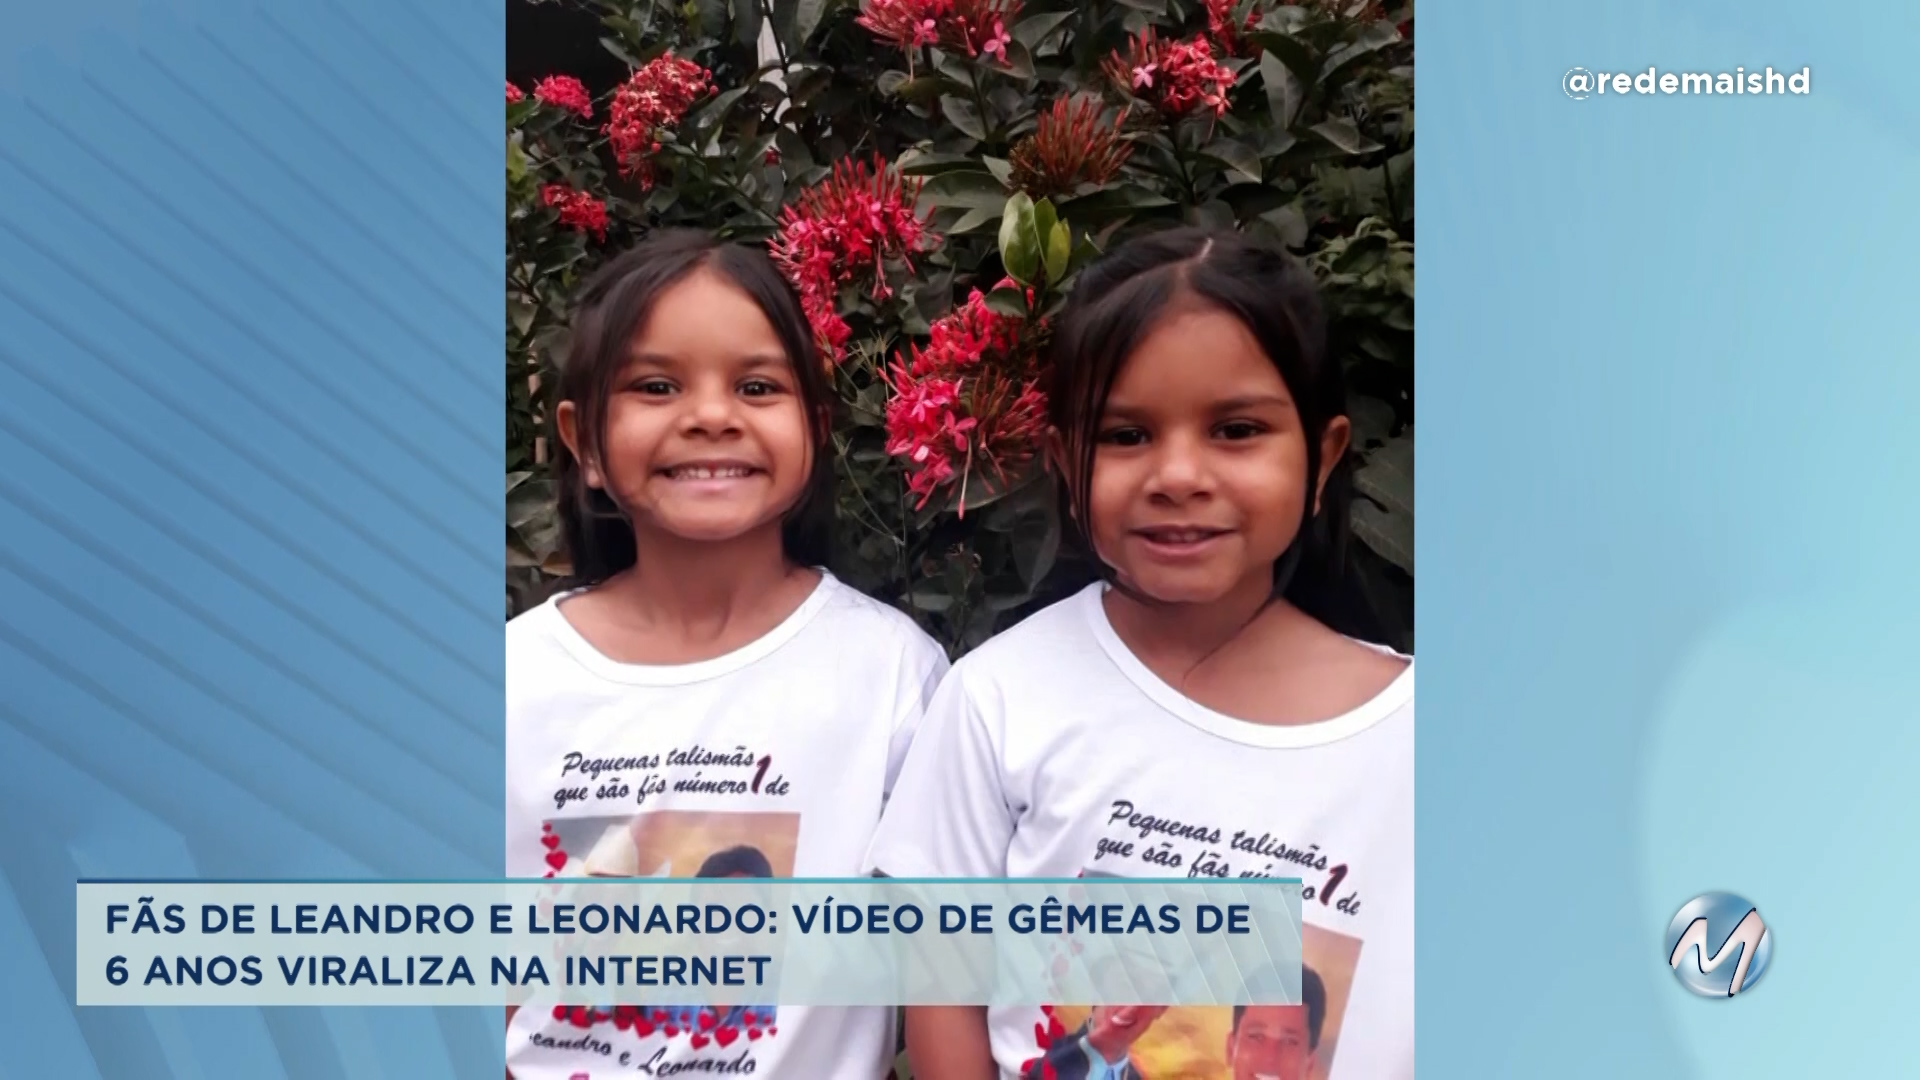 Fãs do Leandro e Leonardo: vídeo de gêmeas viraliza